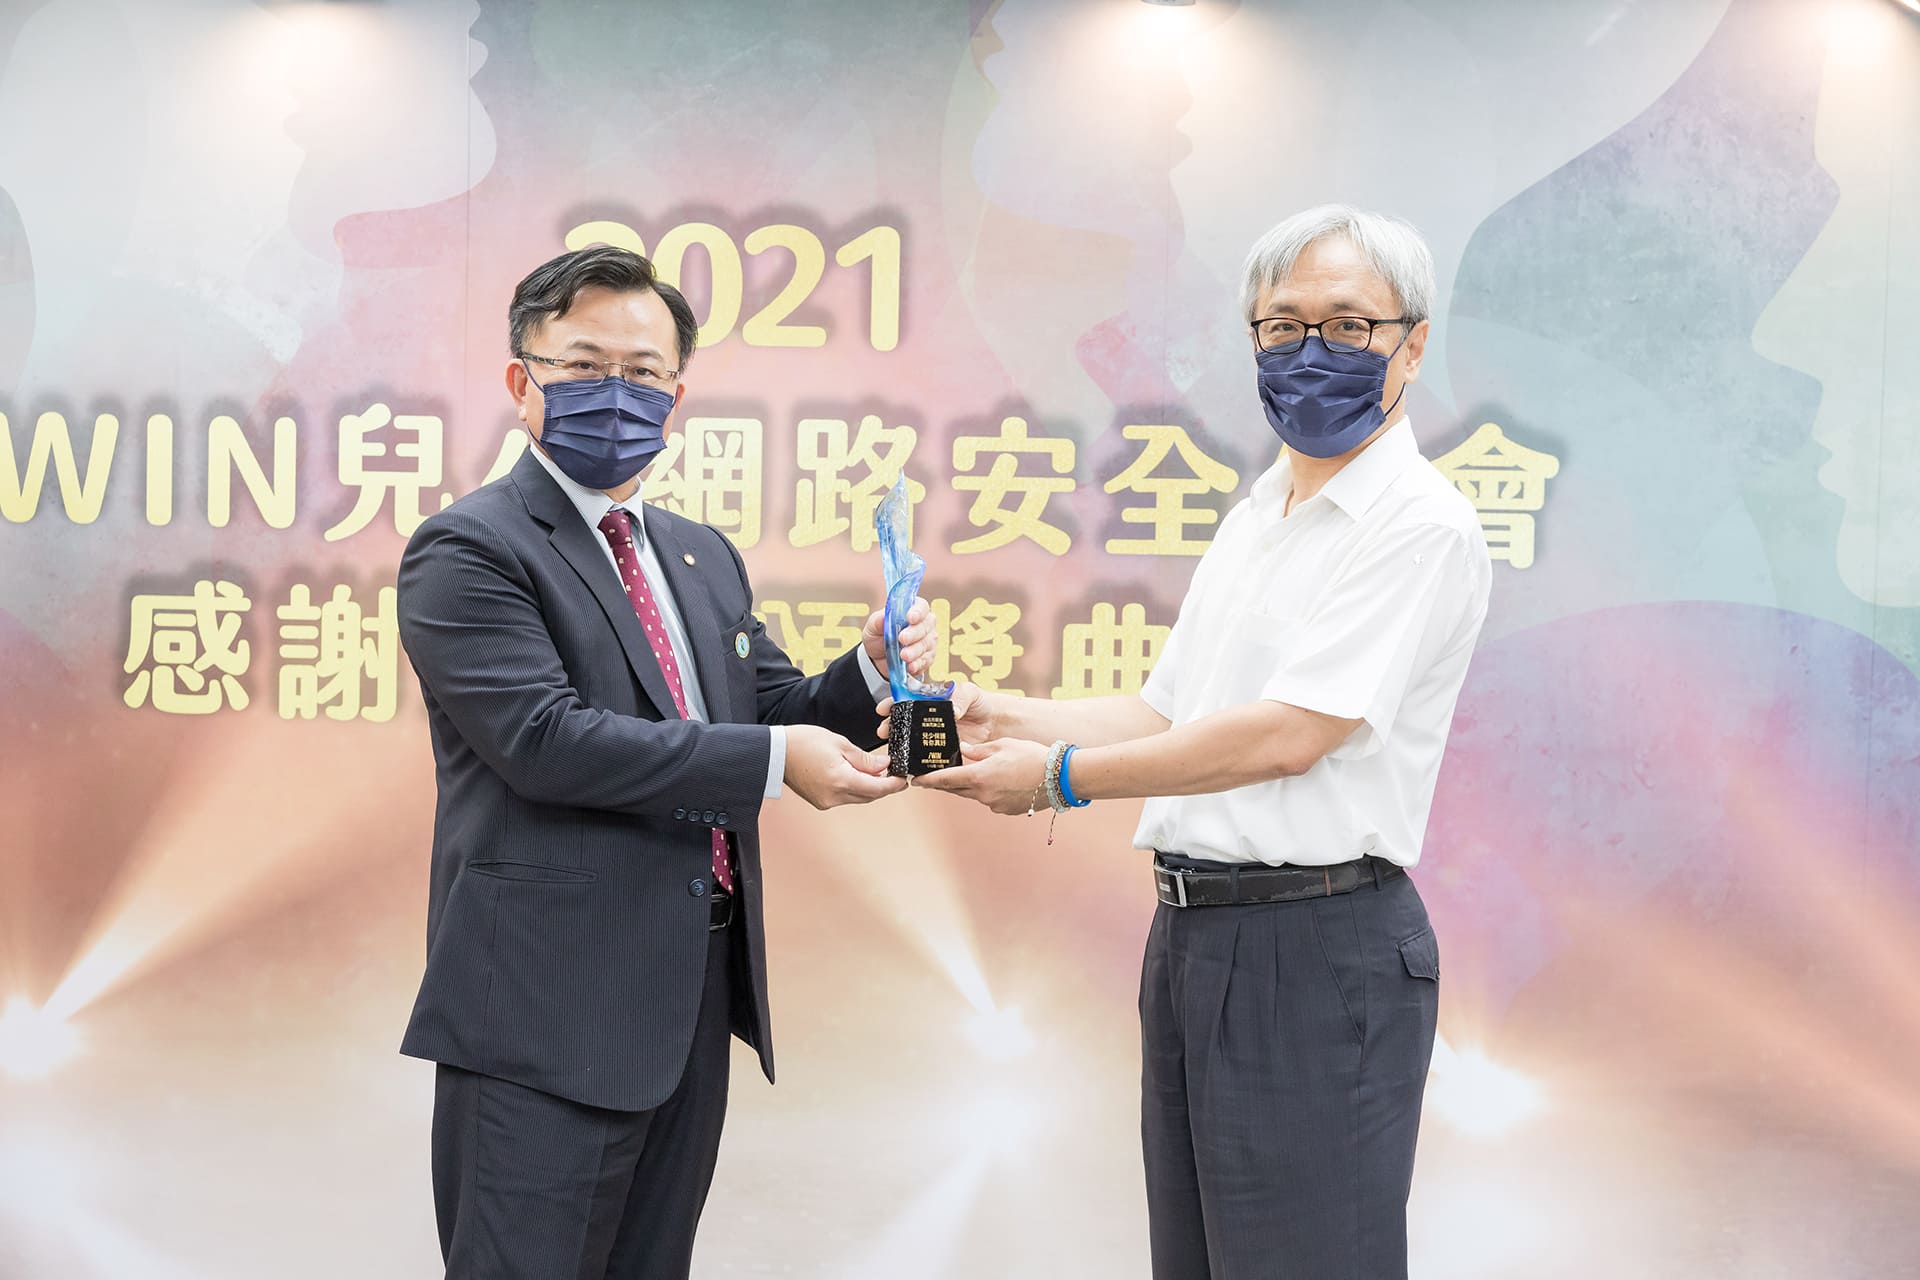 台北市報業商業同業公會領獎特寫照片